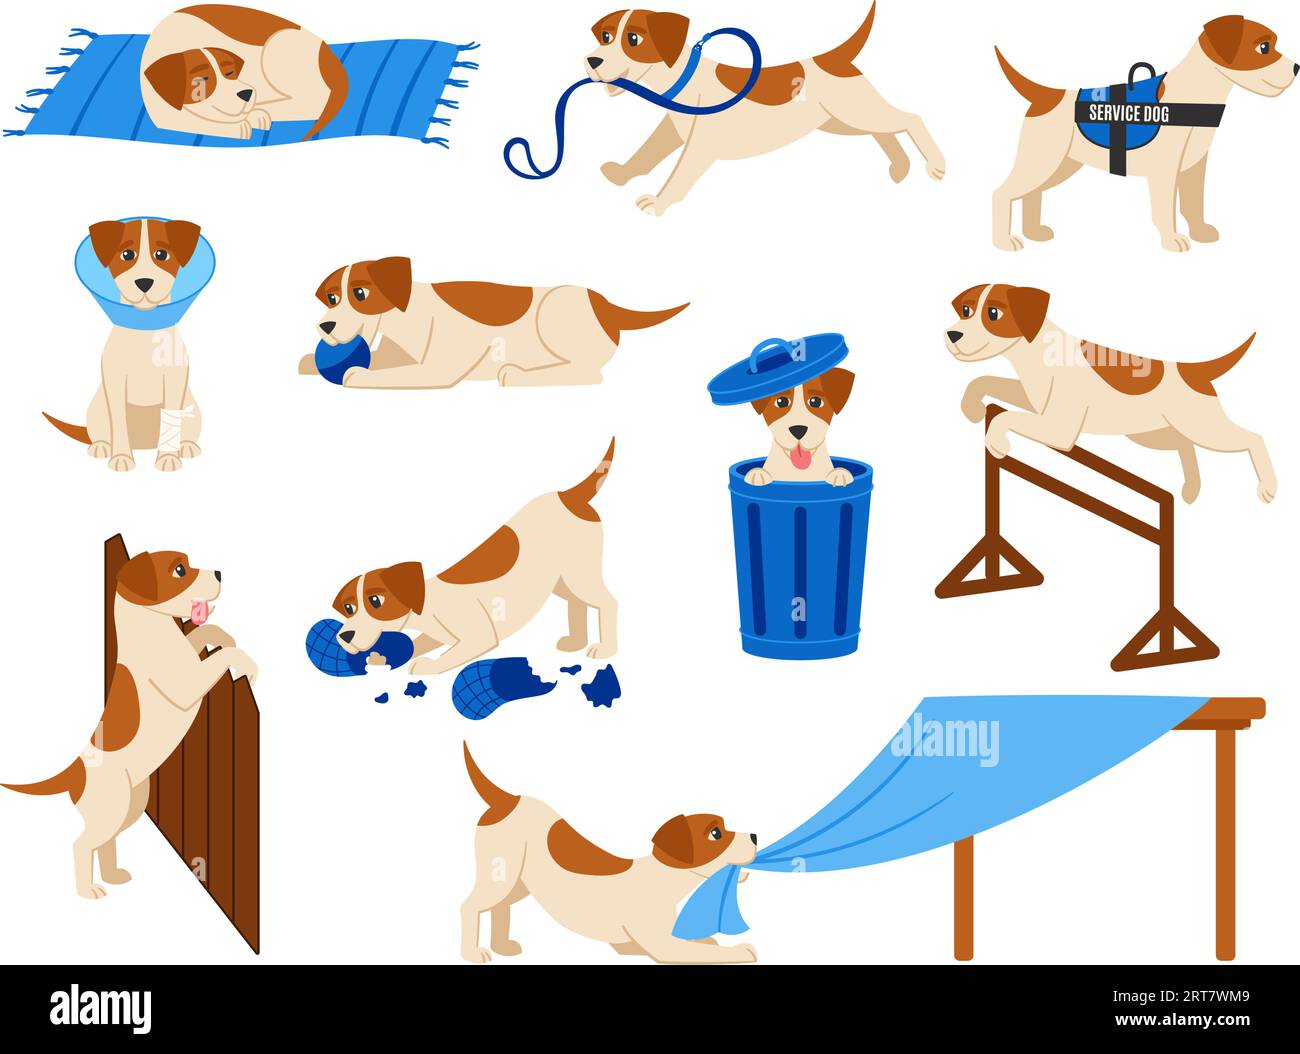 Lustige Zeichentrickhundeszenen. Der süße Beagle-Welpe spielt mit dem Ball, dem Diensthund und dem verletzten Haustier. Hündchen Fehlverhalten, Sprünge und Schlafvektorillustrationsset Stock Vektor